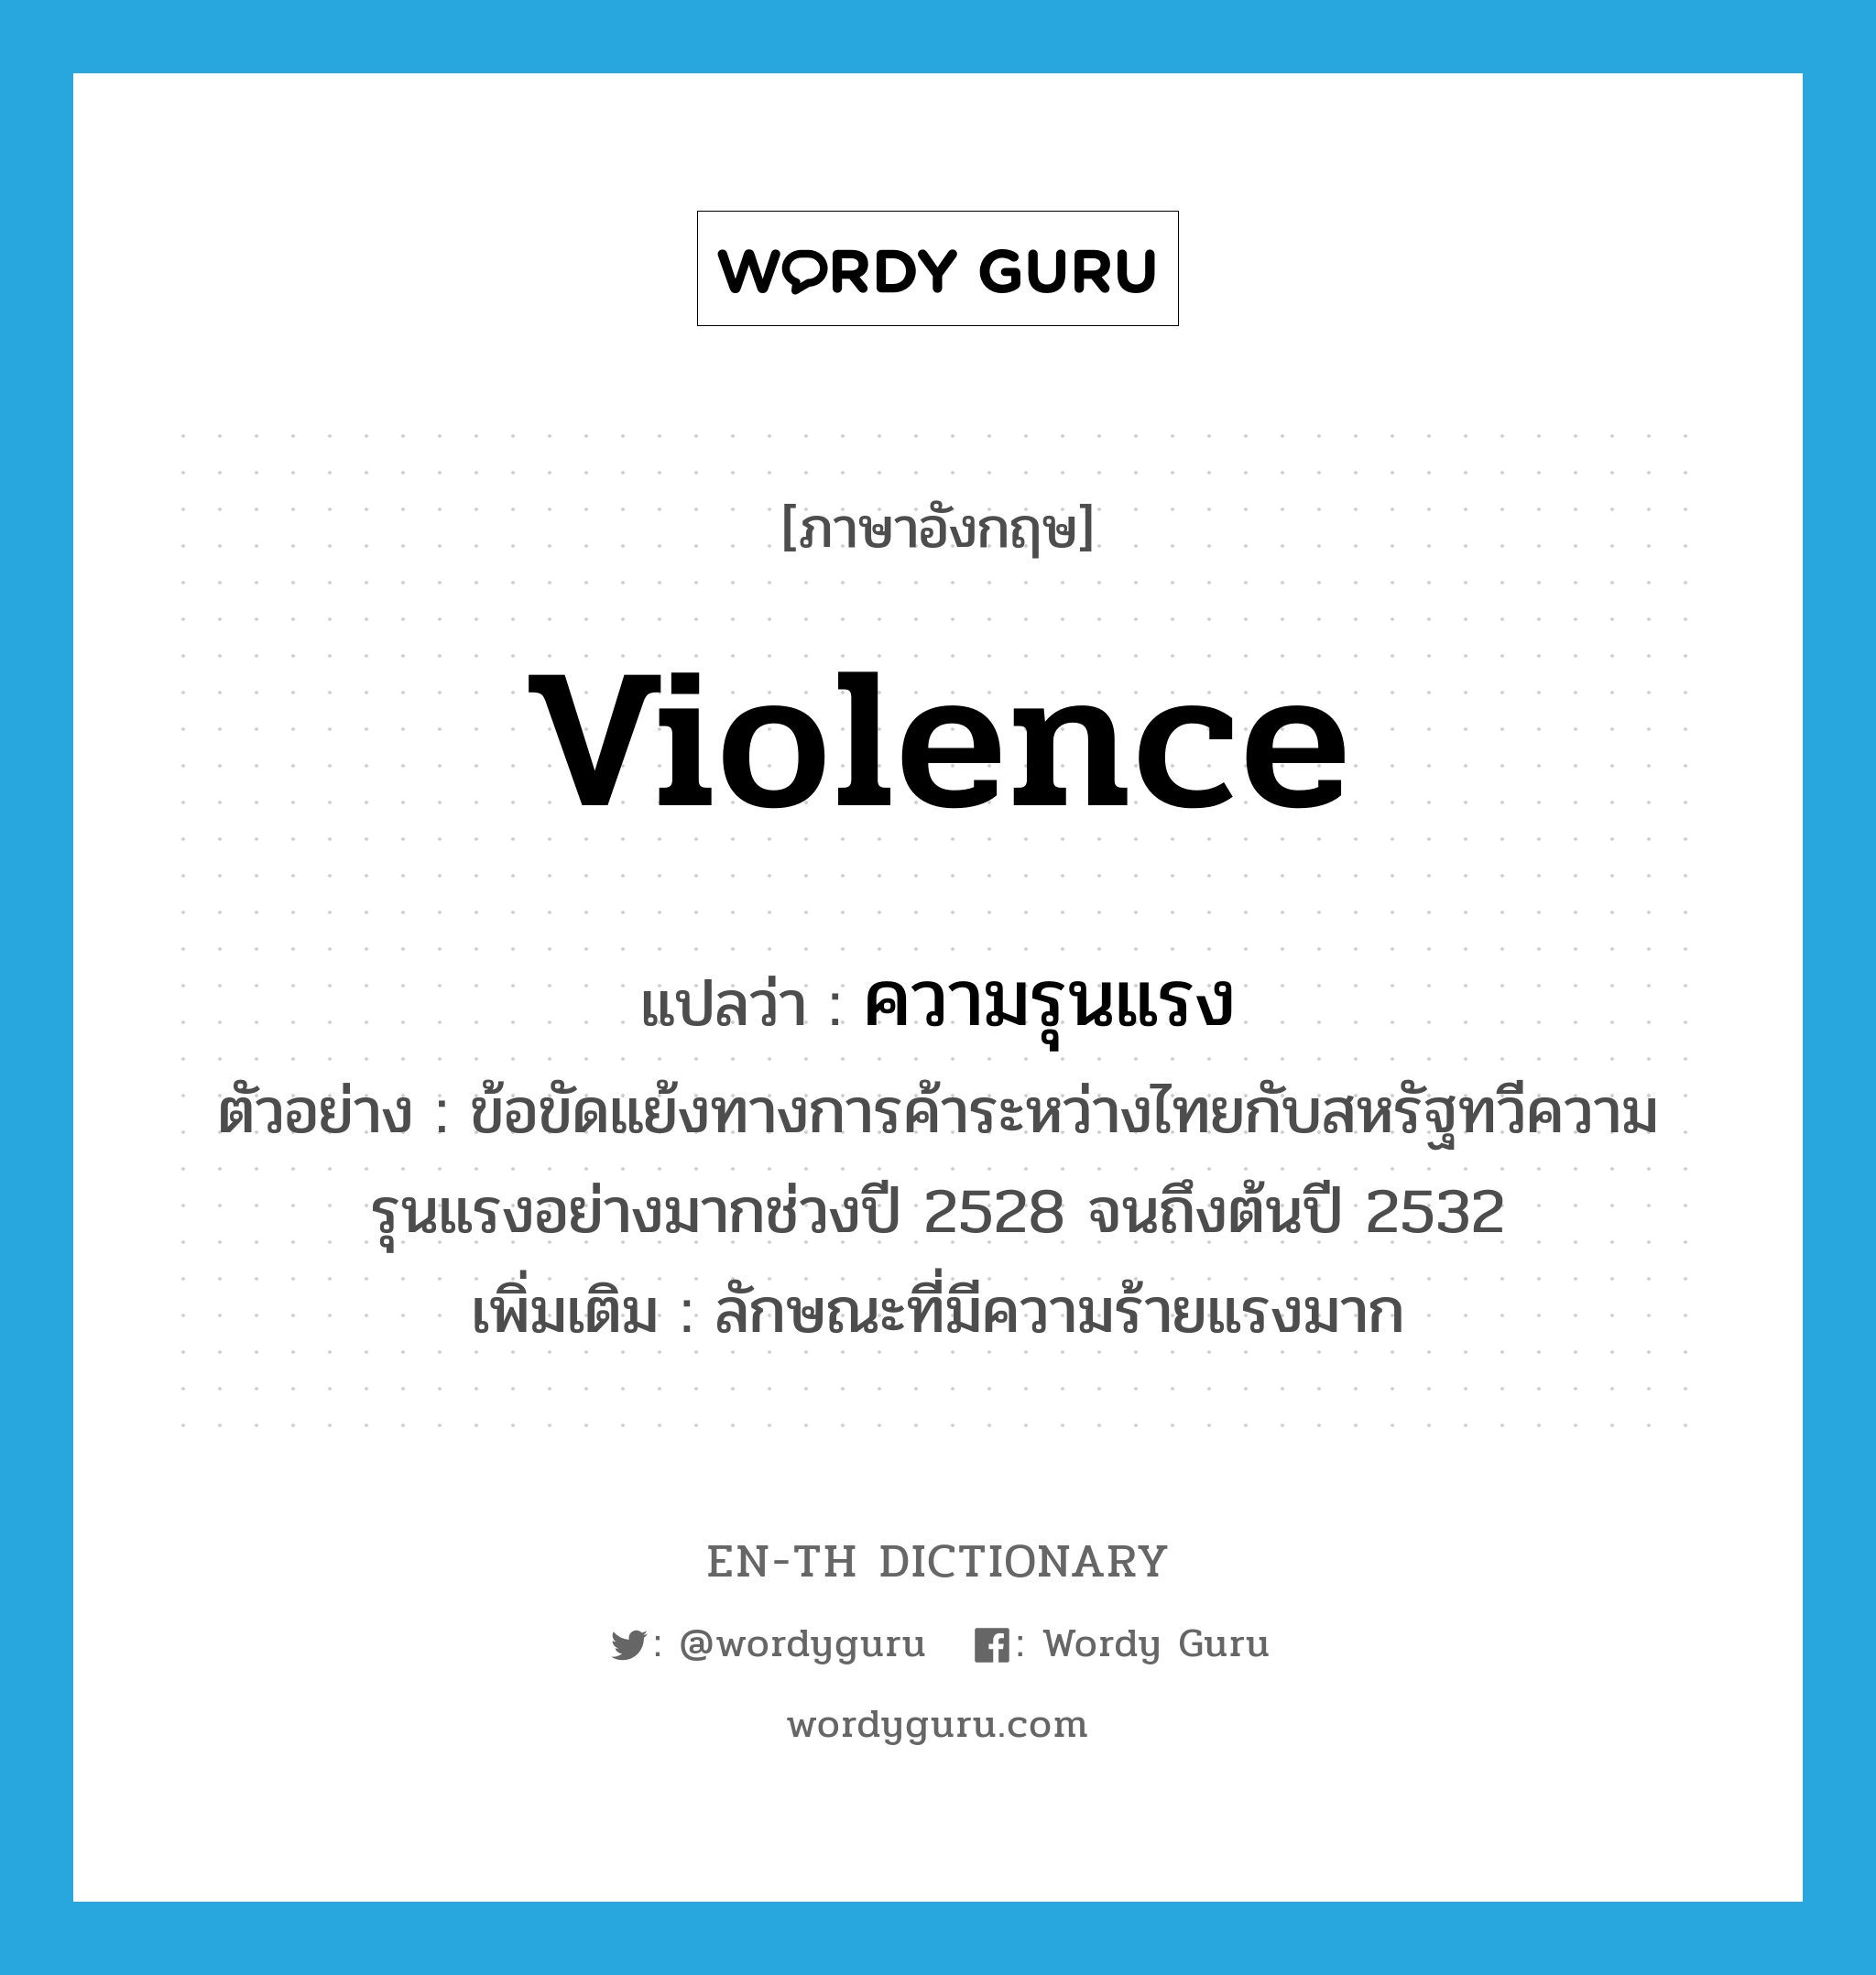 violence แปลว่า?, คำศัพท์ภาษาอังกฤษ violence แปลว่า ความรุนแรง ประเภท N ตัวอย่าง ข้อขัดแย้งทางการค้าระหว่างไทยกับสหรัฐทวีความรุนแรงอย่างมากช่วงปี 2528 จนถึงต้นปี 2532 เพิ่มเติม ลักษณะที่มีความร้ายแรงมาก หมวด N